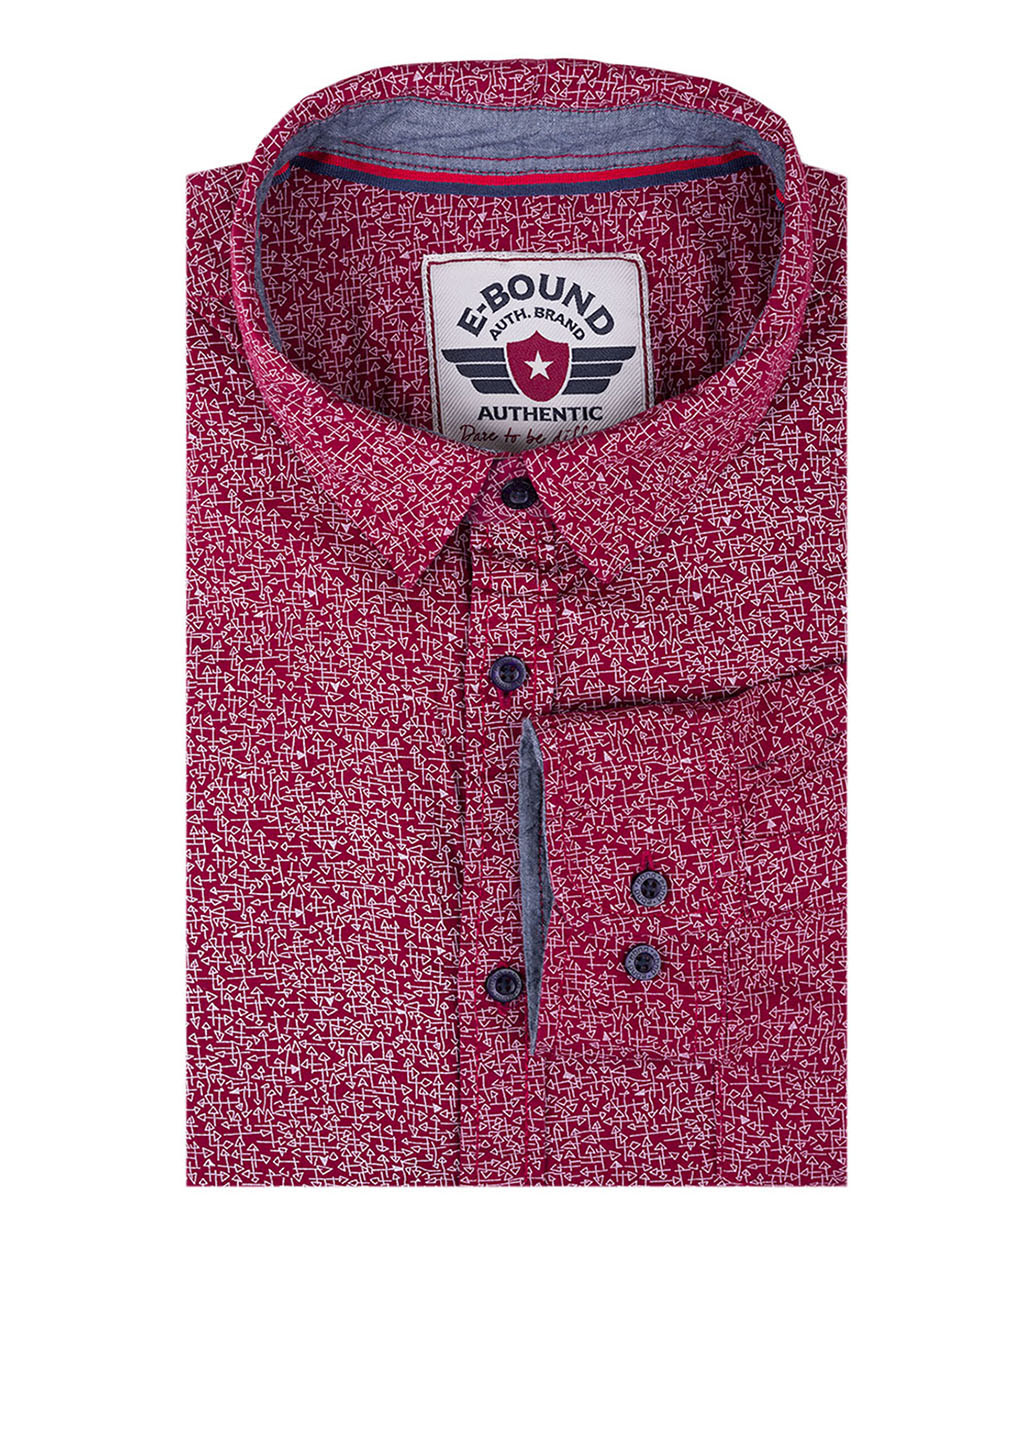 Бордовая кэжуал рубашка с рисунком E-Bound